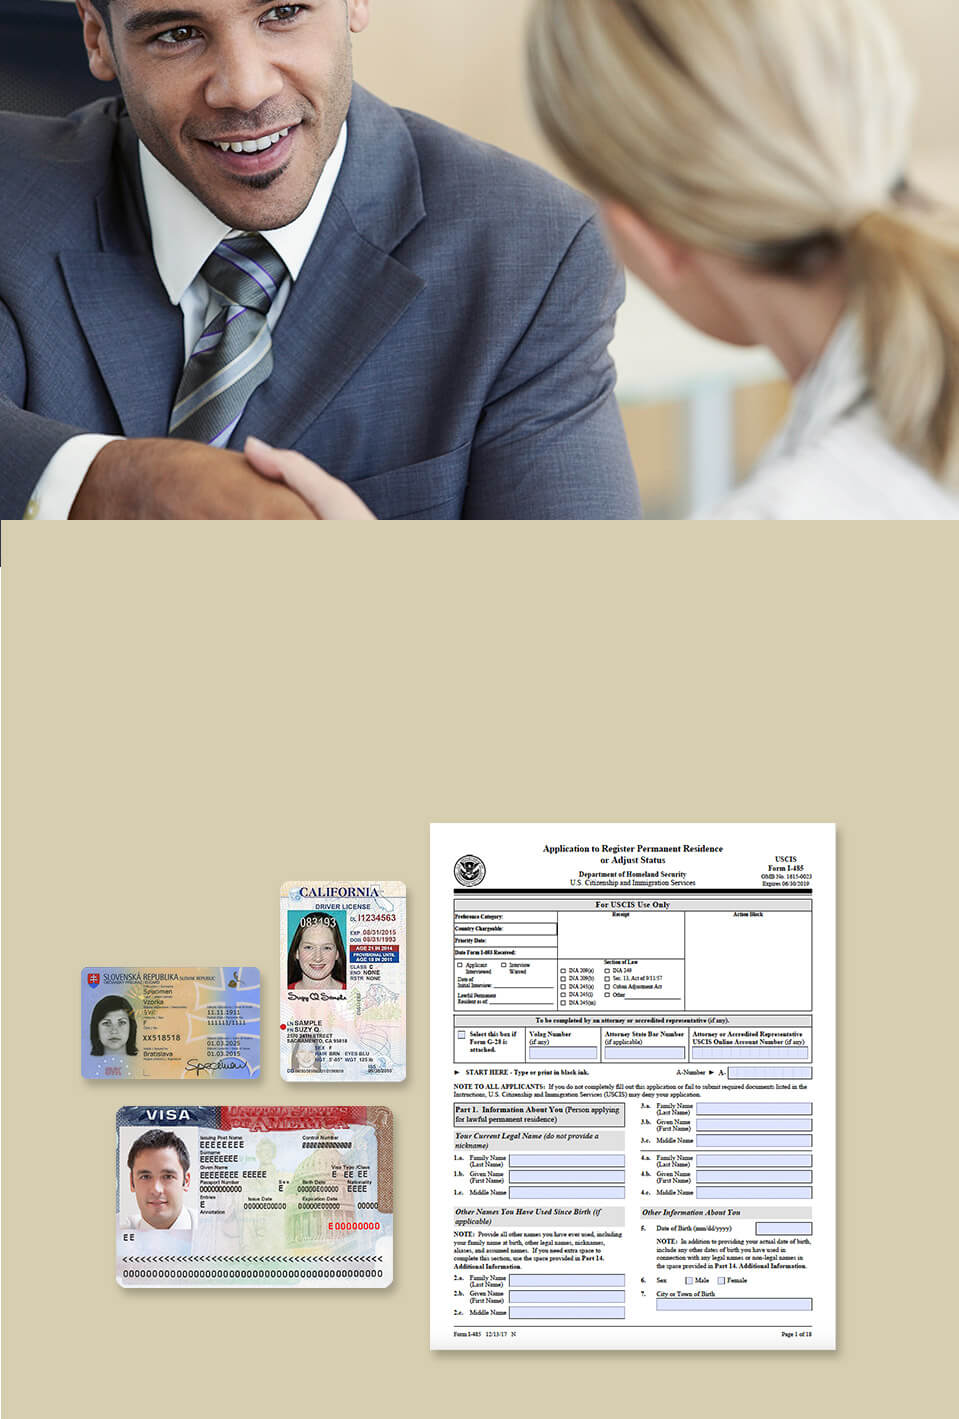 将所需文件扫描到一个数据夹或另存为整份文件。 可同时扫描身份证、驾照及申请表